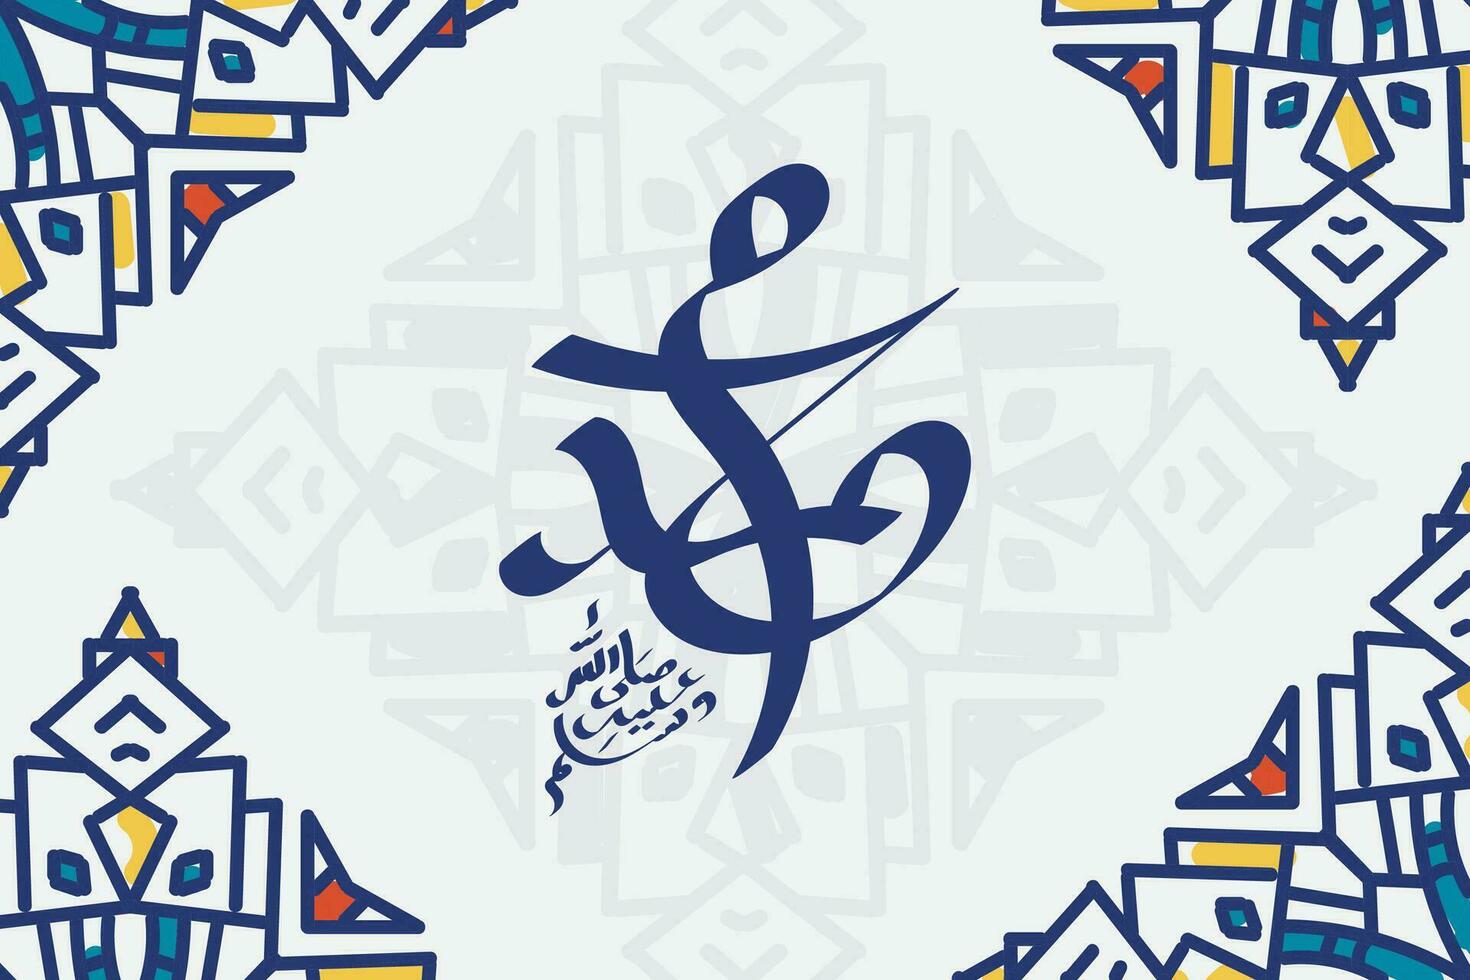 arabicum och islamic kalligrafi av de profet muhammed, fred vara på honom, traditionell och modern islamic konst kan vara Begagnade för många ämnen tycka om mawlid, el nabawi. översättning, de profet muhammad vektor